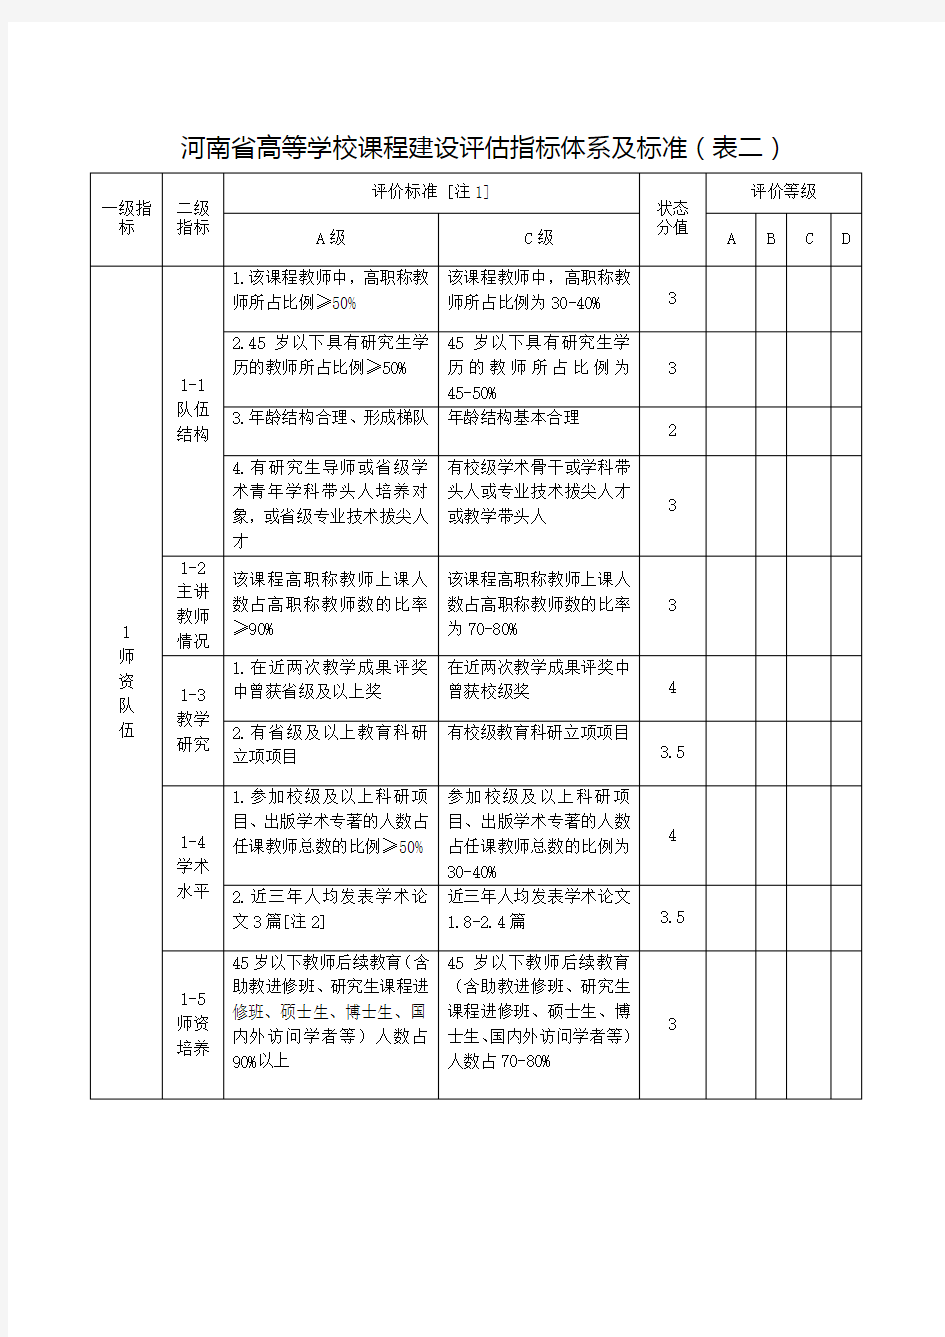 河南省高等学校课程建设评估指标体系及标准表